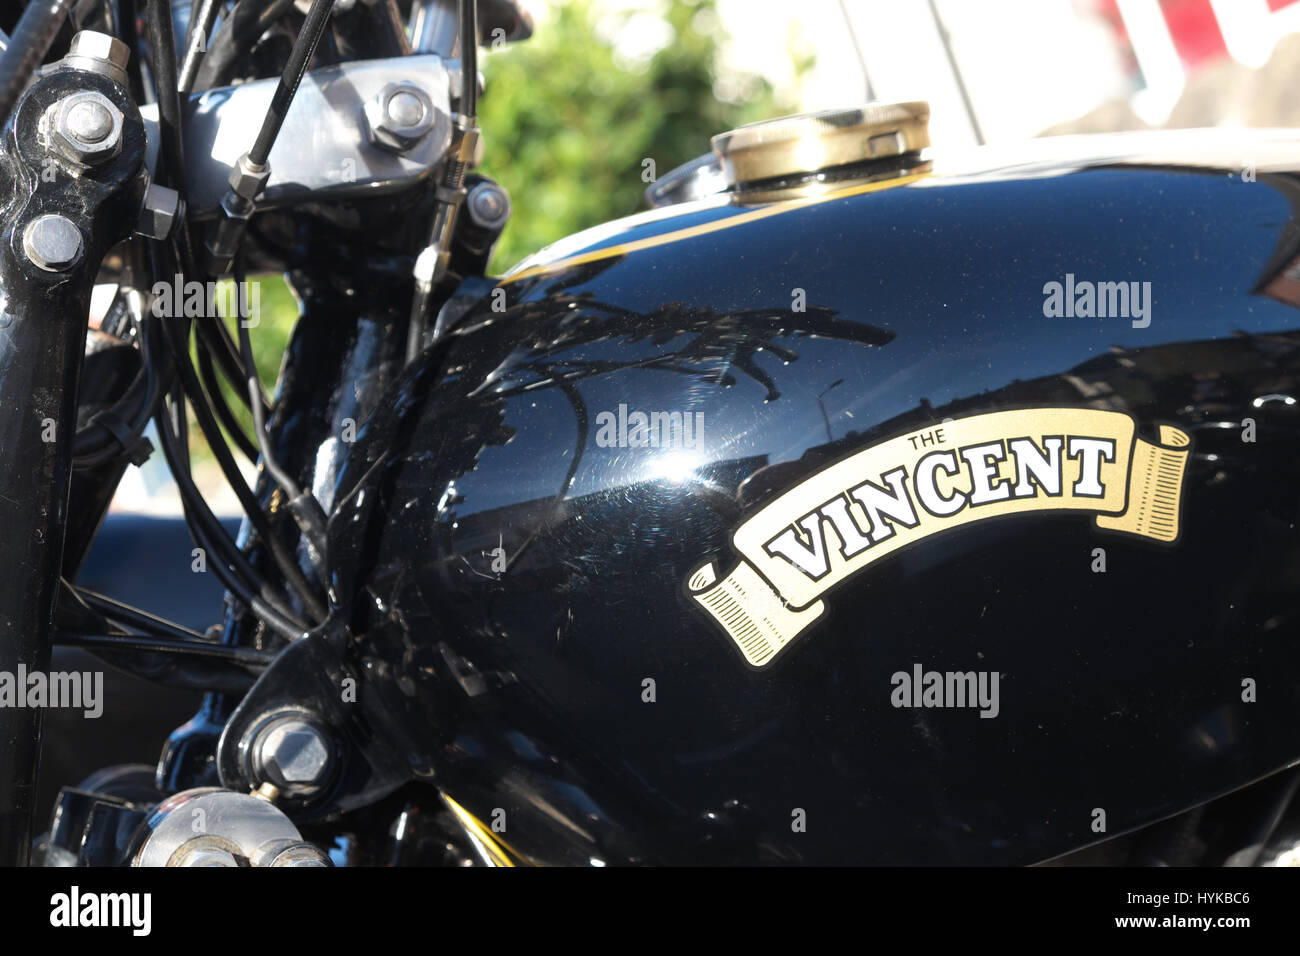 Vincent moto fabricant britannique de motos de 1928 à 1955 Banque D'Images